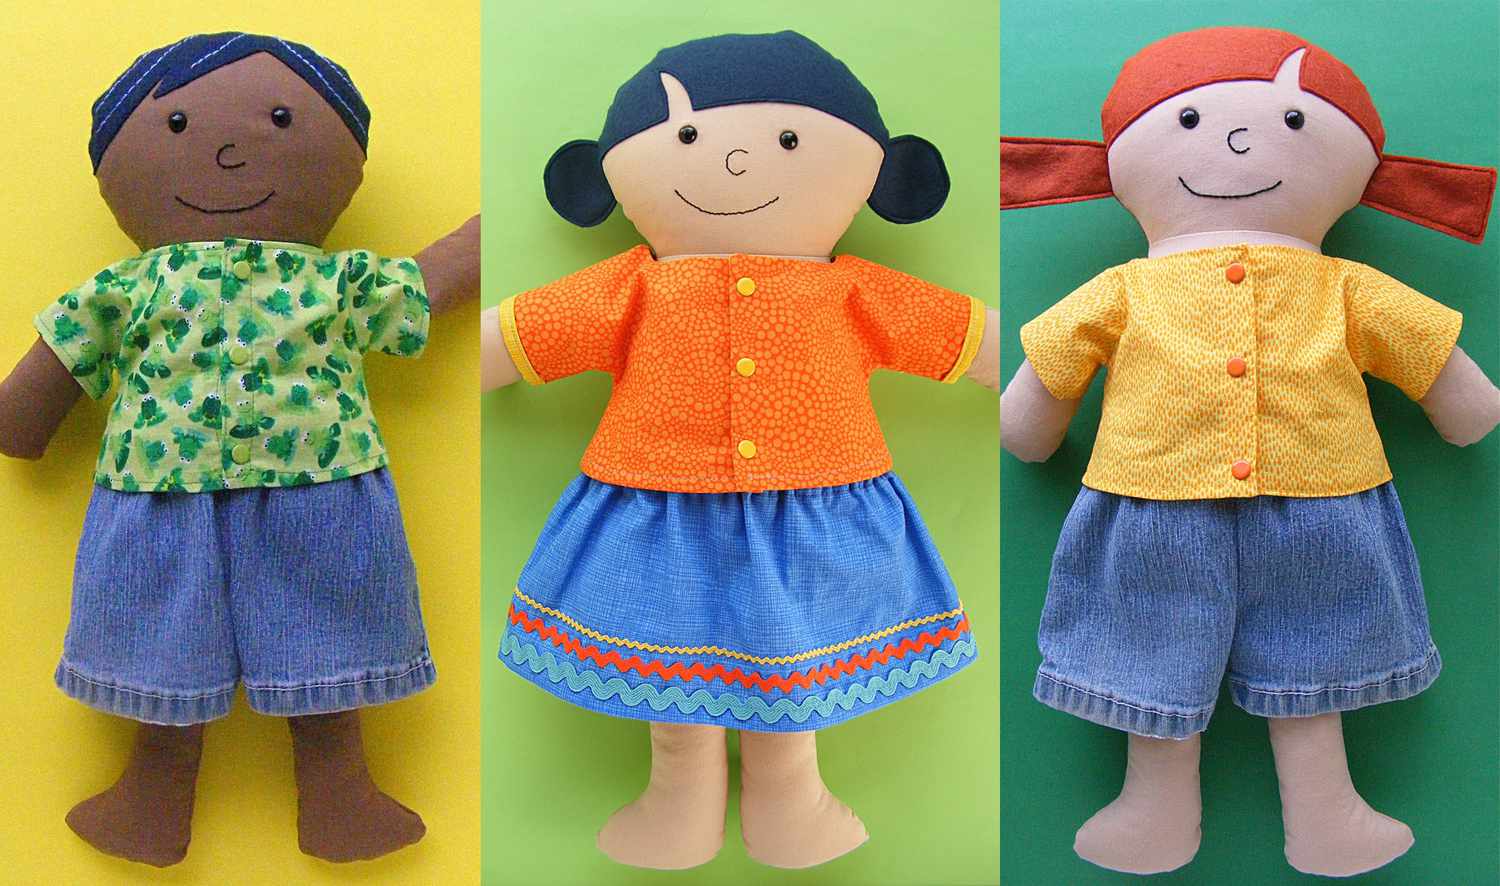 Easy-sew娃娃衬衫、短裤和裙子三娃娃。